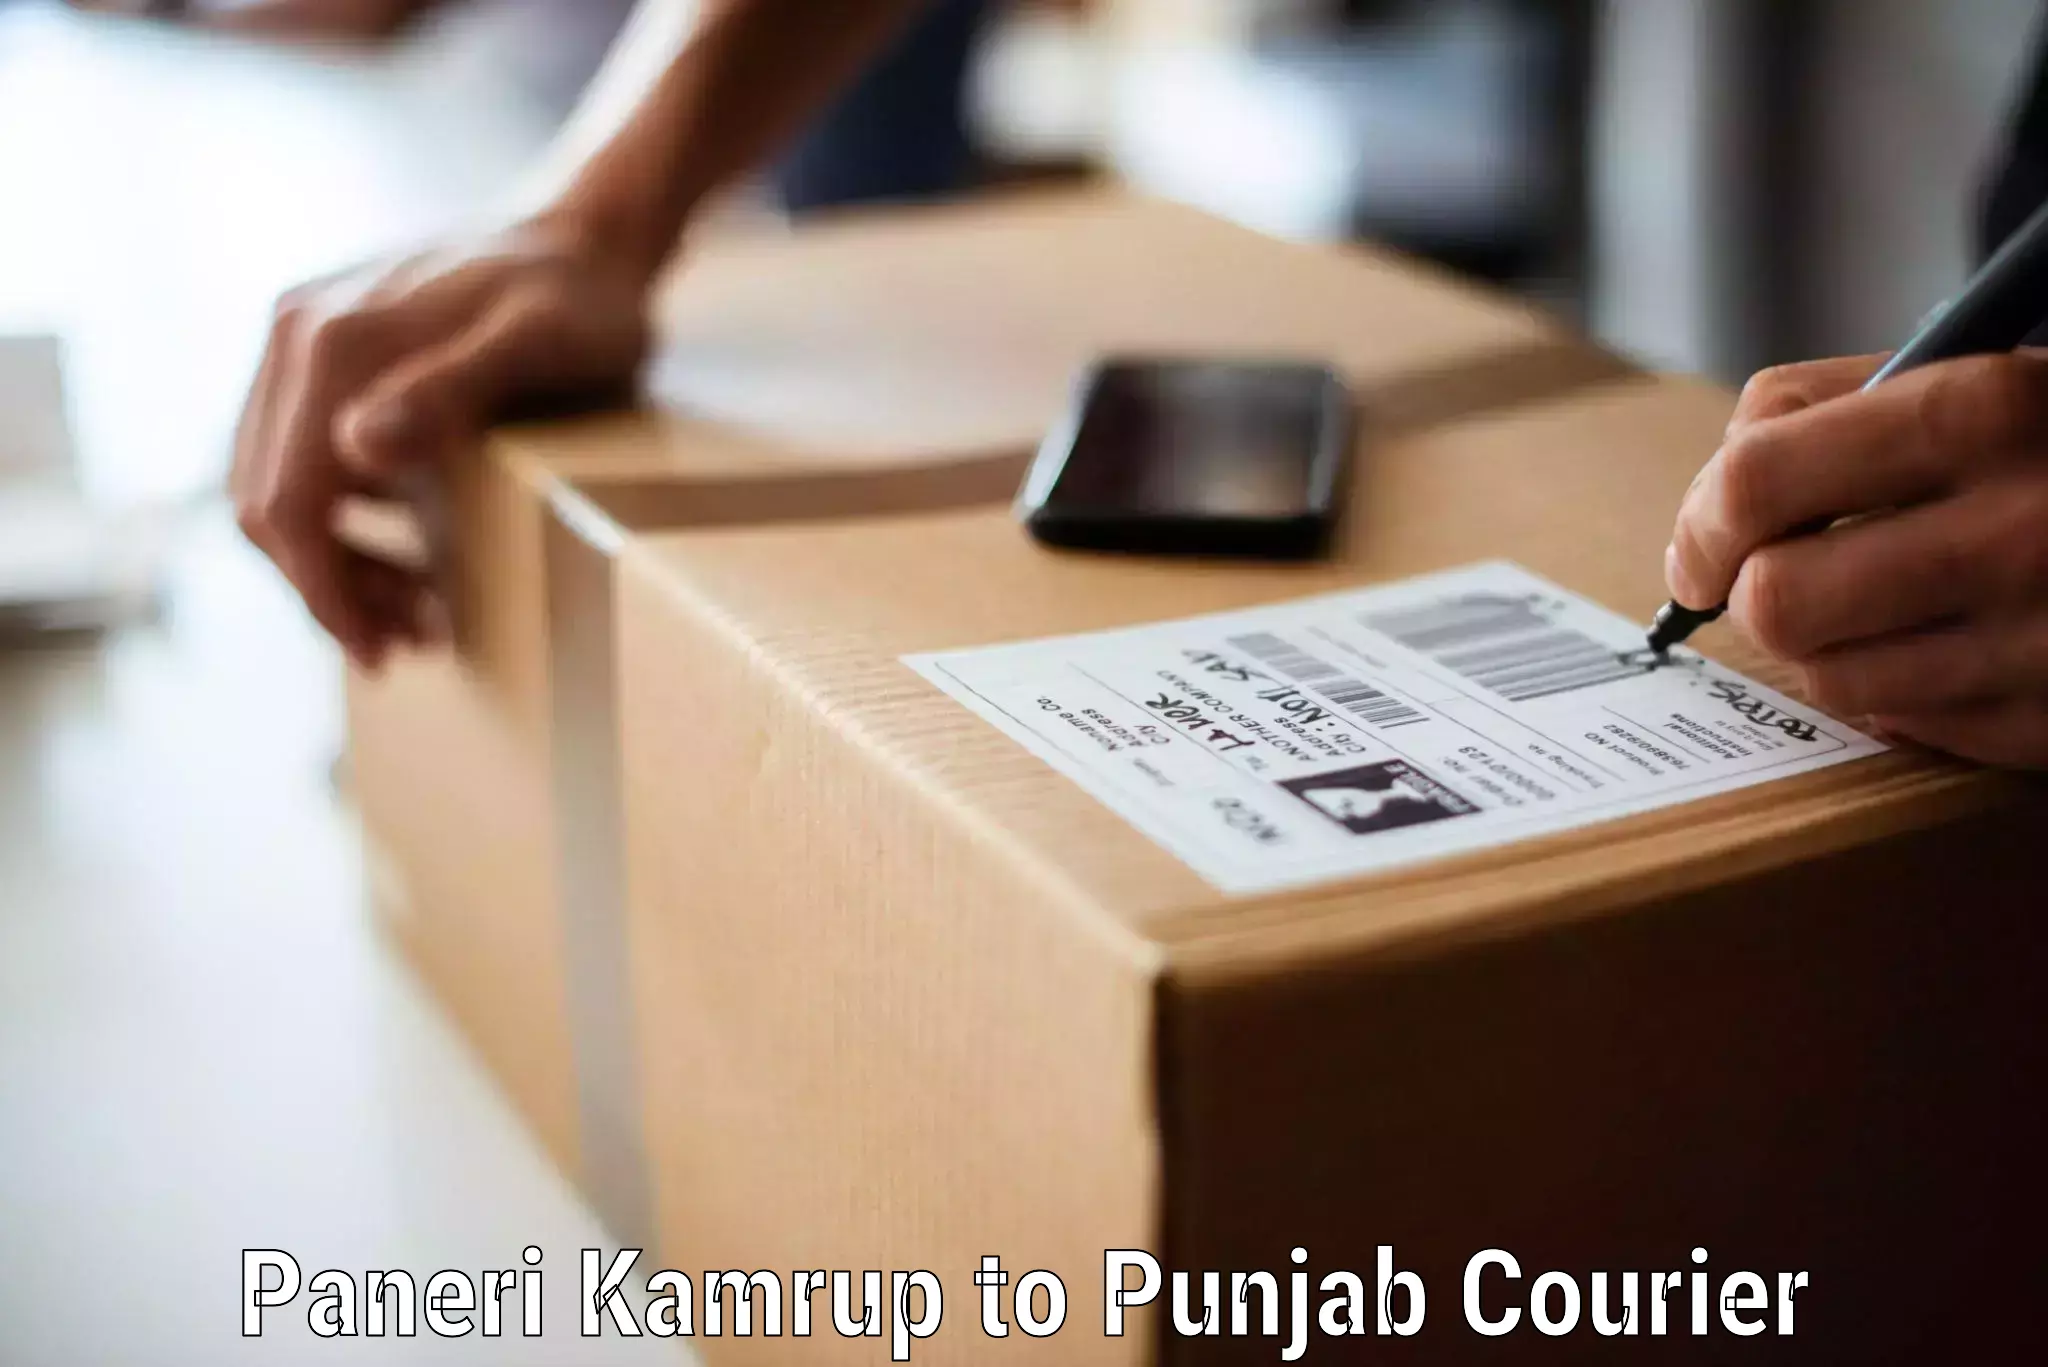 Furniture moving experts Paneri Kamrup to Punjab